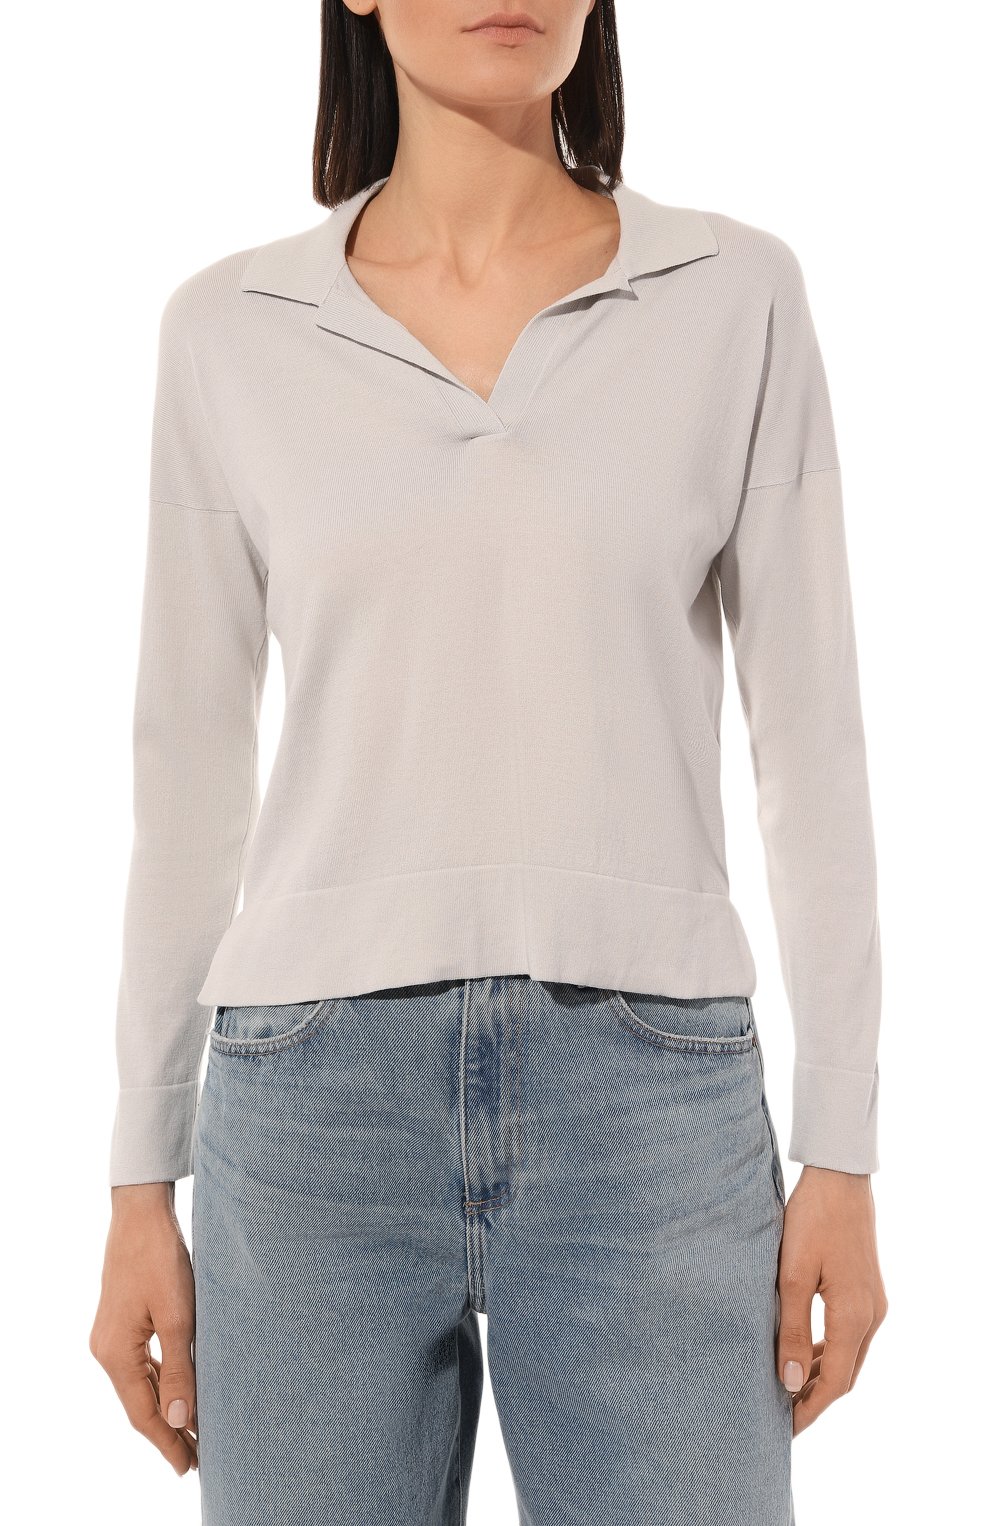 Хлопковый пуловер-поло Gran Sasso 57288/14005, цвет серый, размер 42 57288/14005 - фото 3